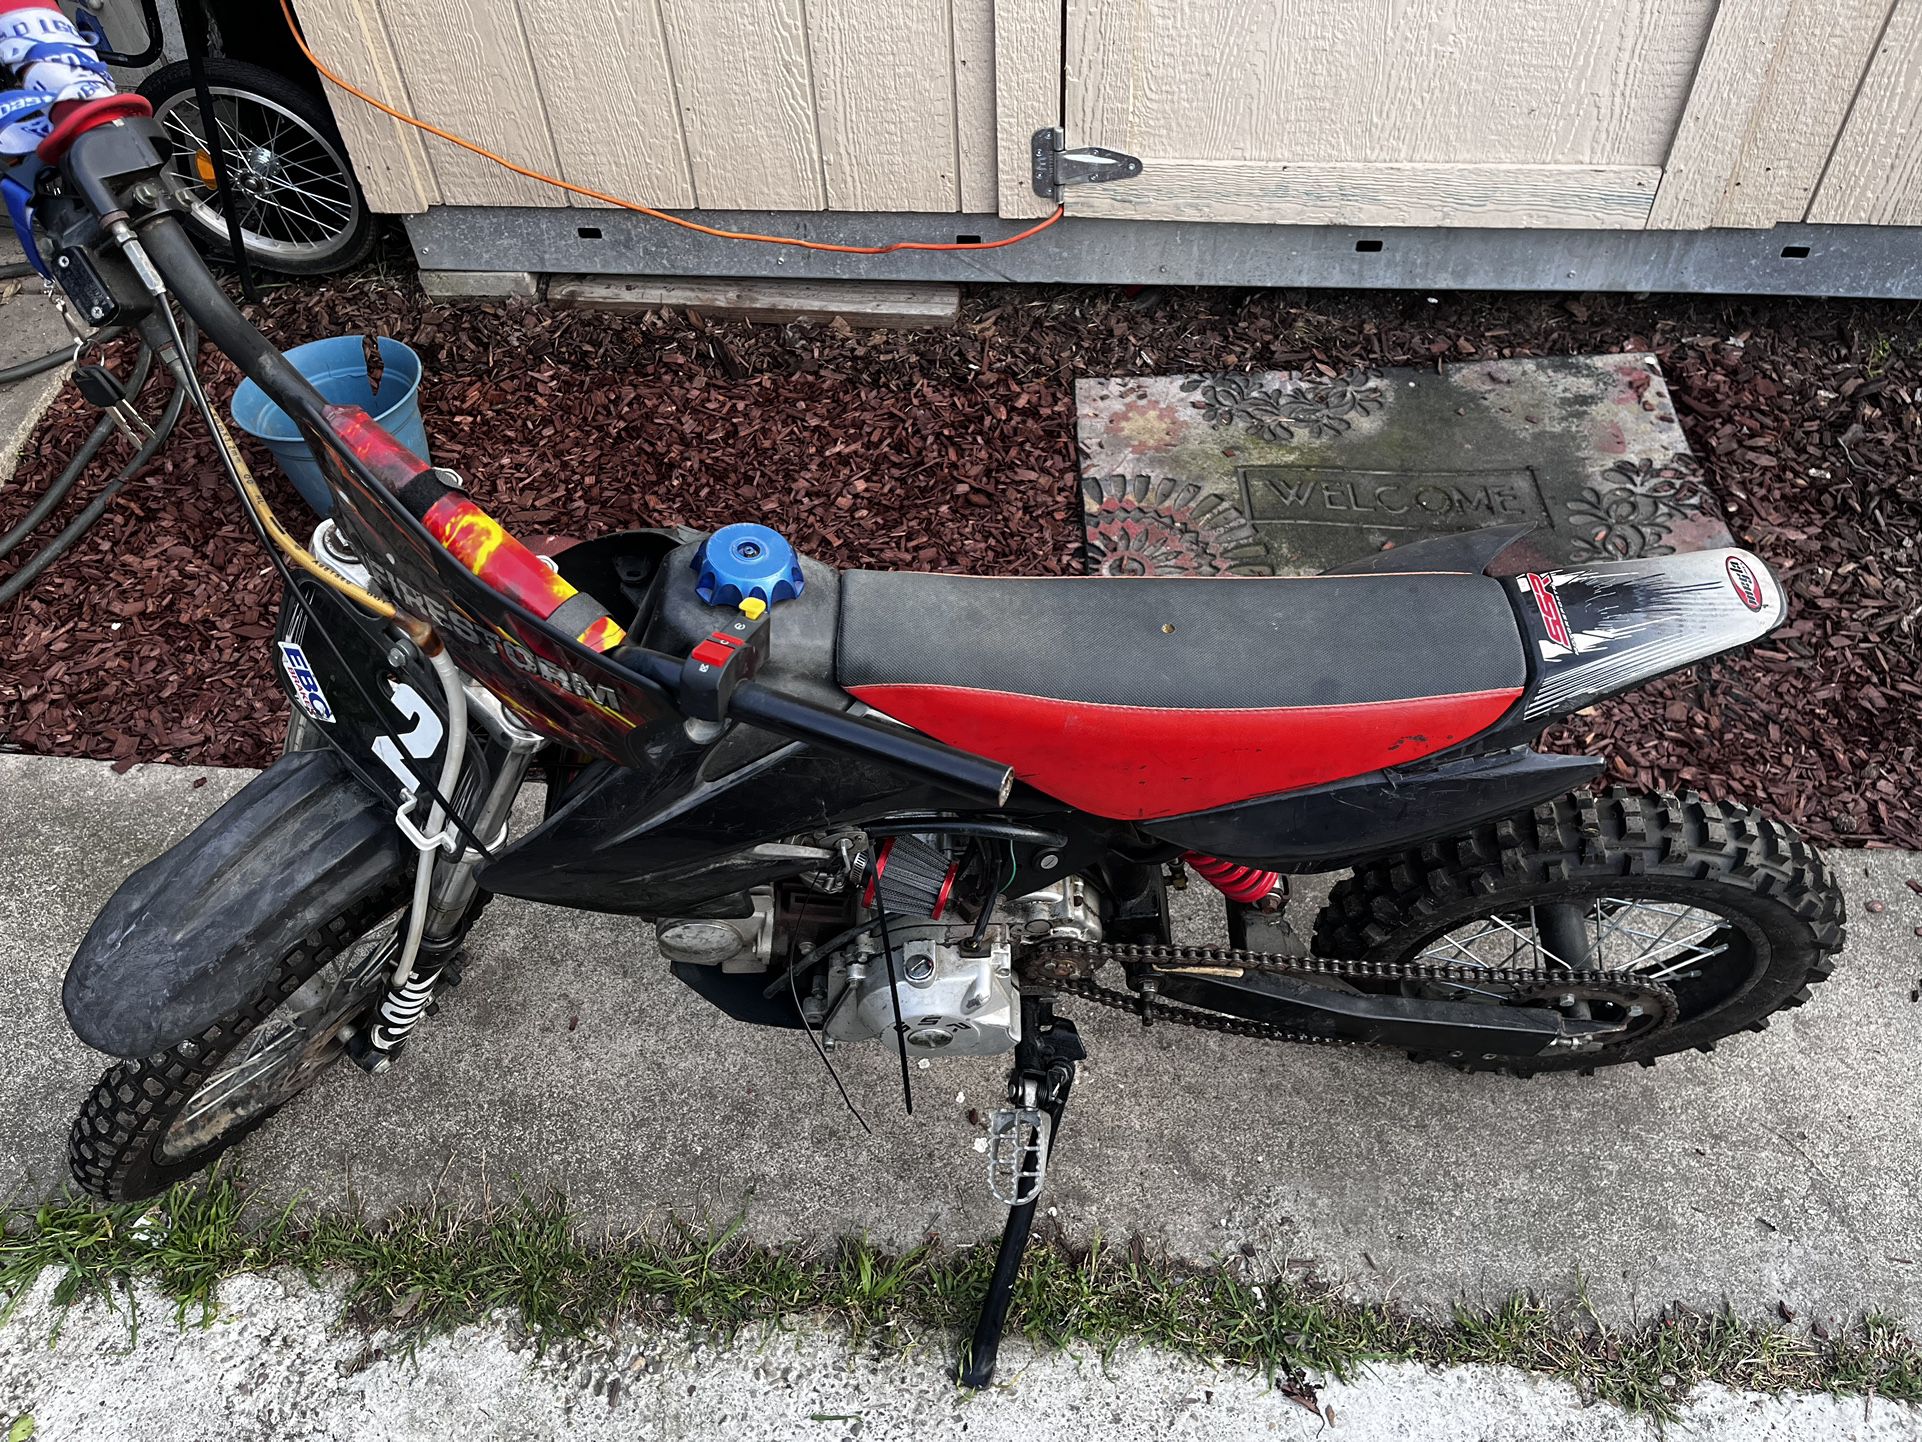 125cc Dirt bike 